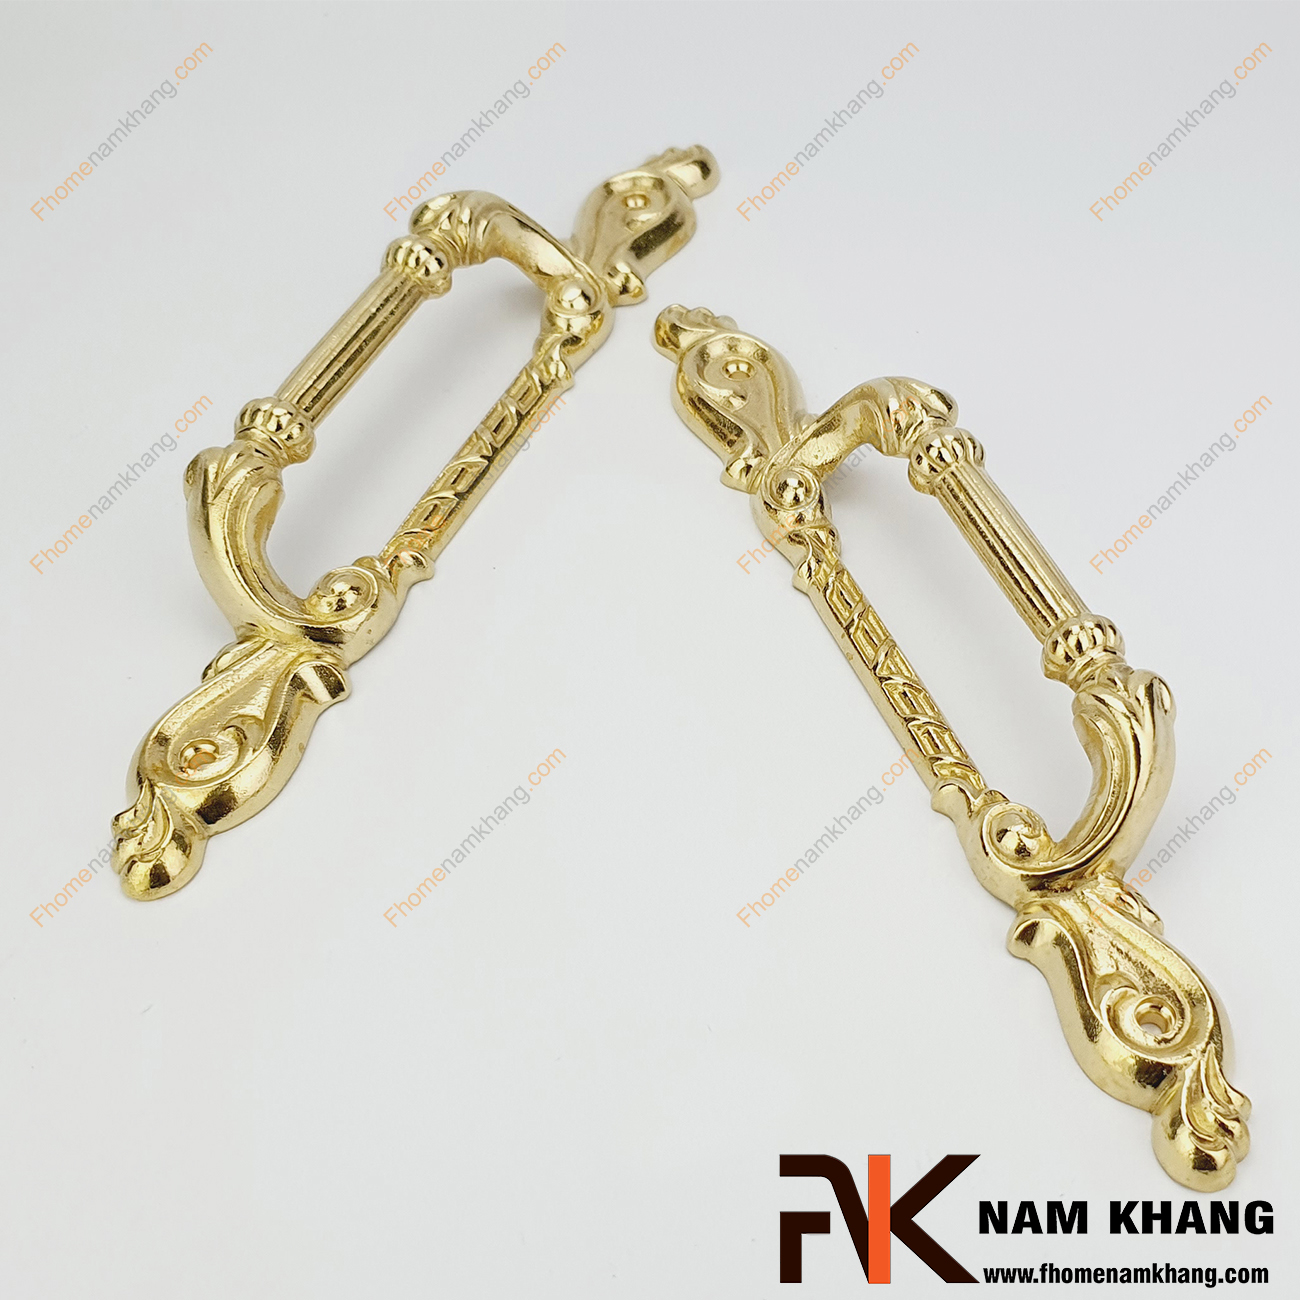 Tay nắm cửa chính đa dạng kích thước màu đồng vàng NKD122 được sản xuất từ đồng cao cấp, với kích thước lớn và đa dạng dùng cho cửa chính, cửa đi, cửa cổng,...